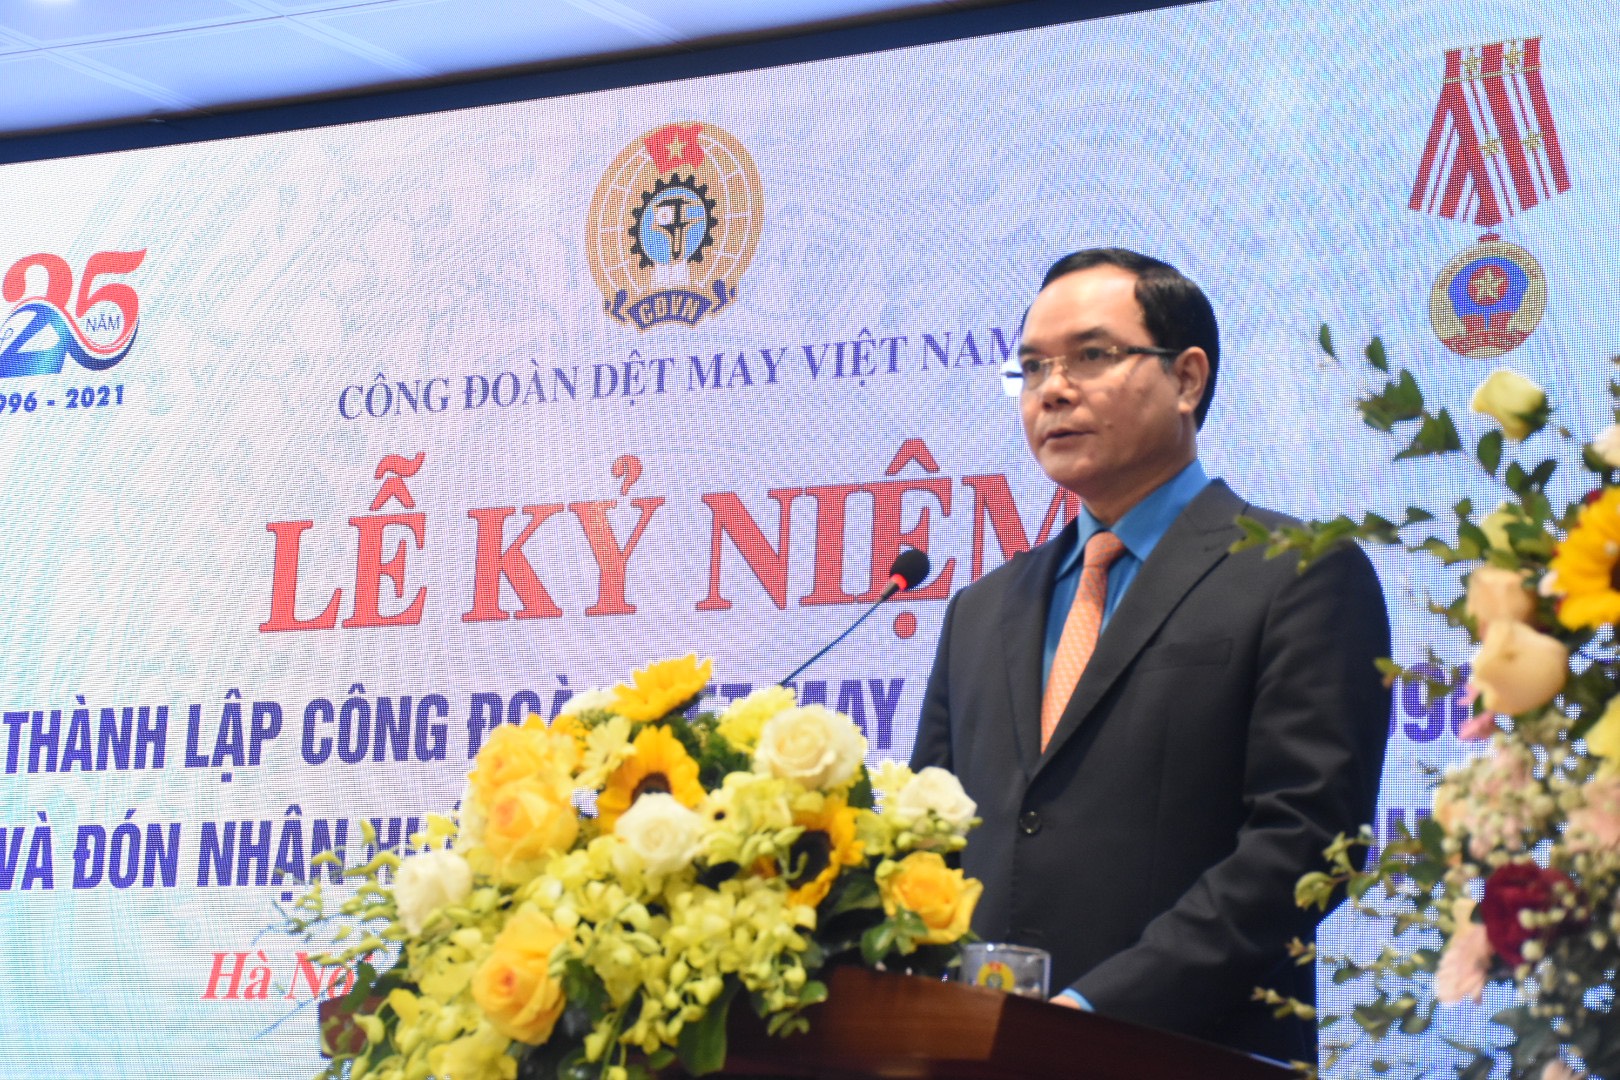 Chủ tịch Tổng Liên đoàn Lao động Việt Nam Nguyễn Đình Khang đã đánh giá cao các hoạt động của tổ chức Công đoàn DMVN